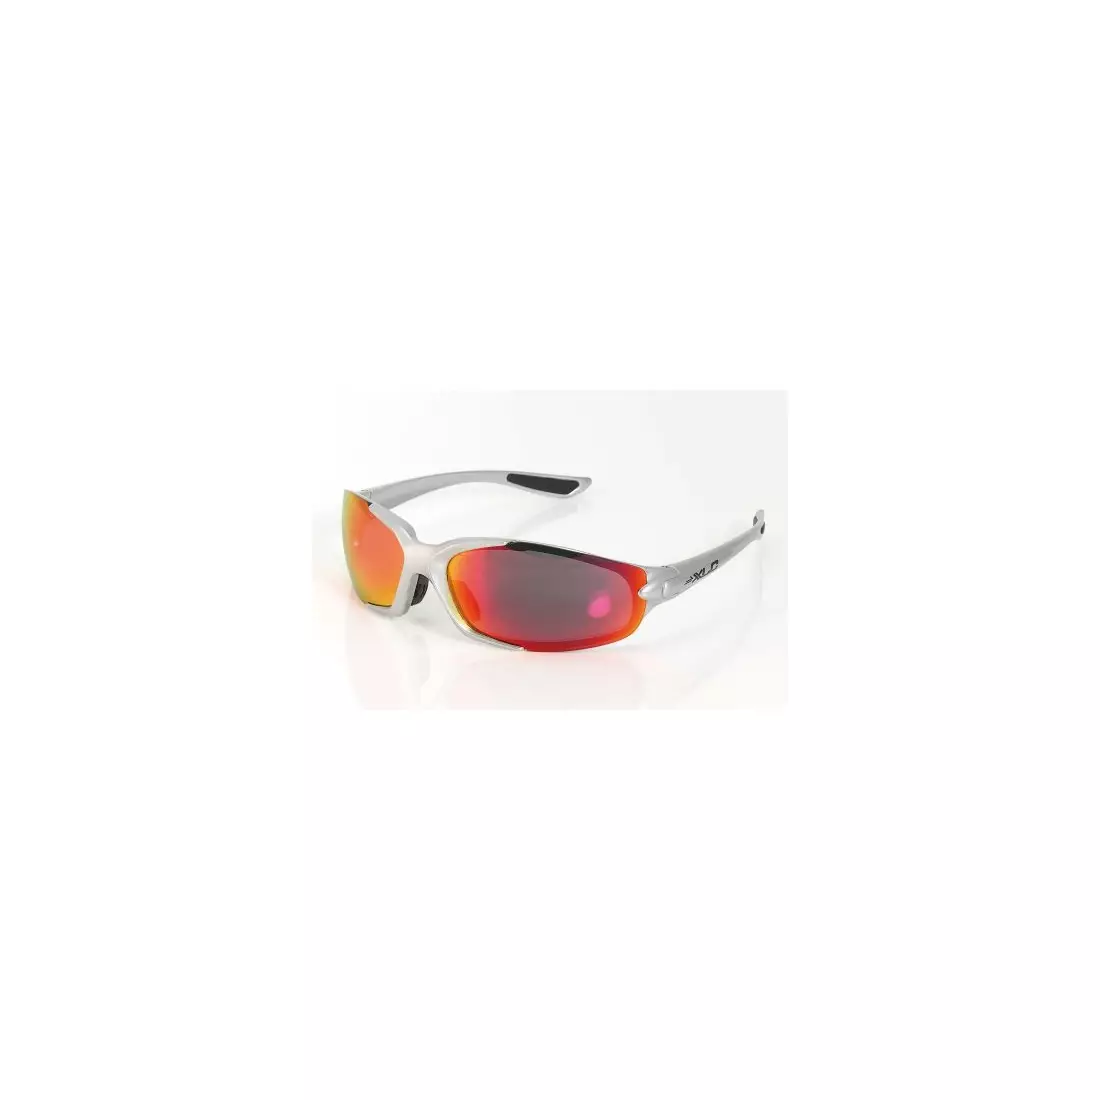 XLC GALAPAGOS - ochelari sport - 156600 - culoare: Argintiu